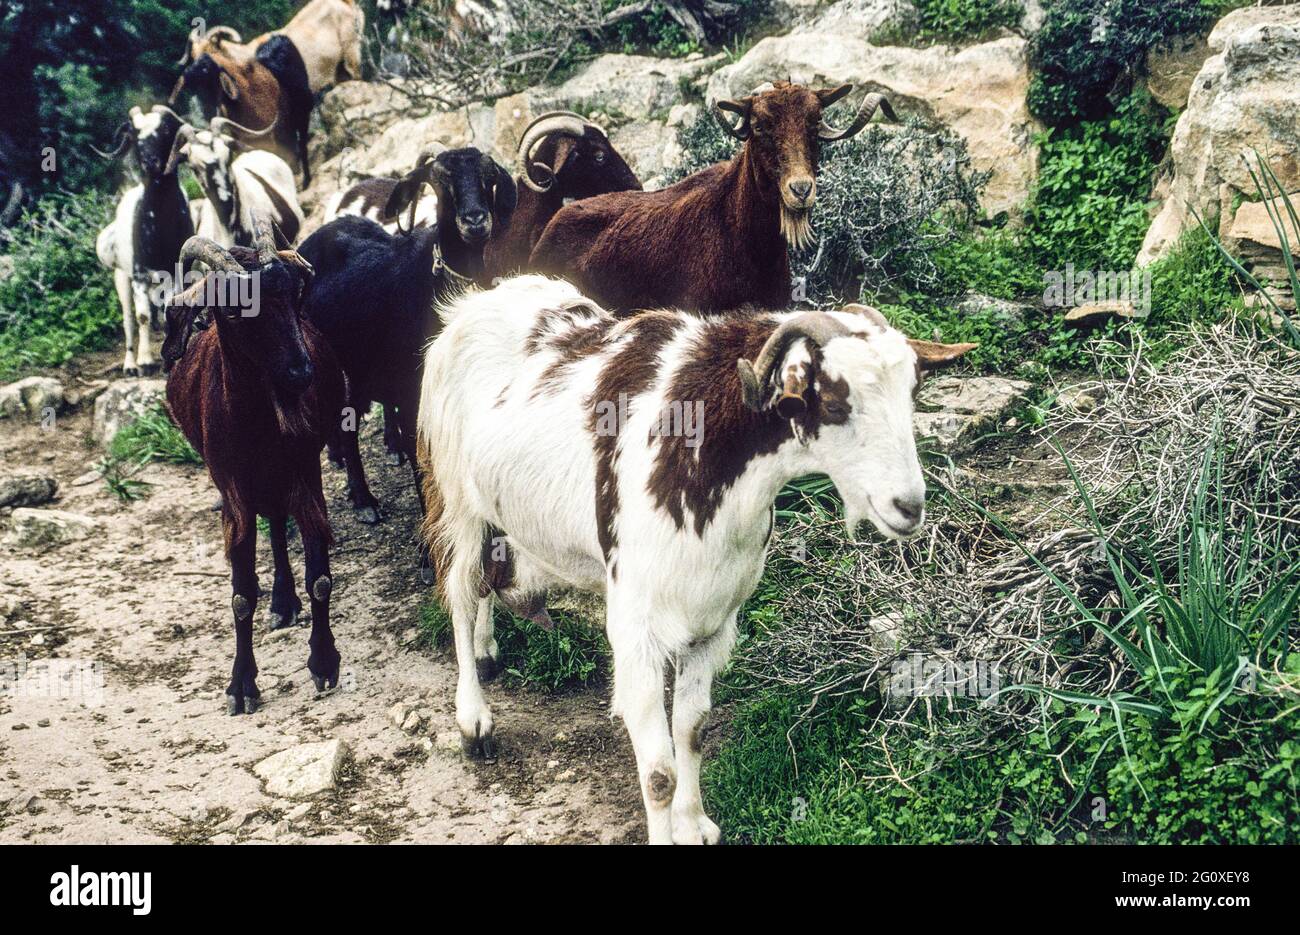 Begegnung mit einer halbwilden Ziegenherde, die über die Akamas Halbinsel  streift. - Encounter with a herd of goats roving around on the Akamas peninsula. Stock Photo